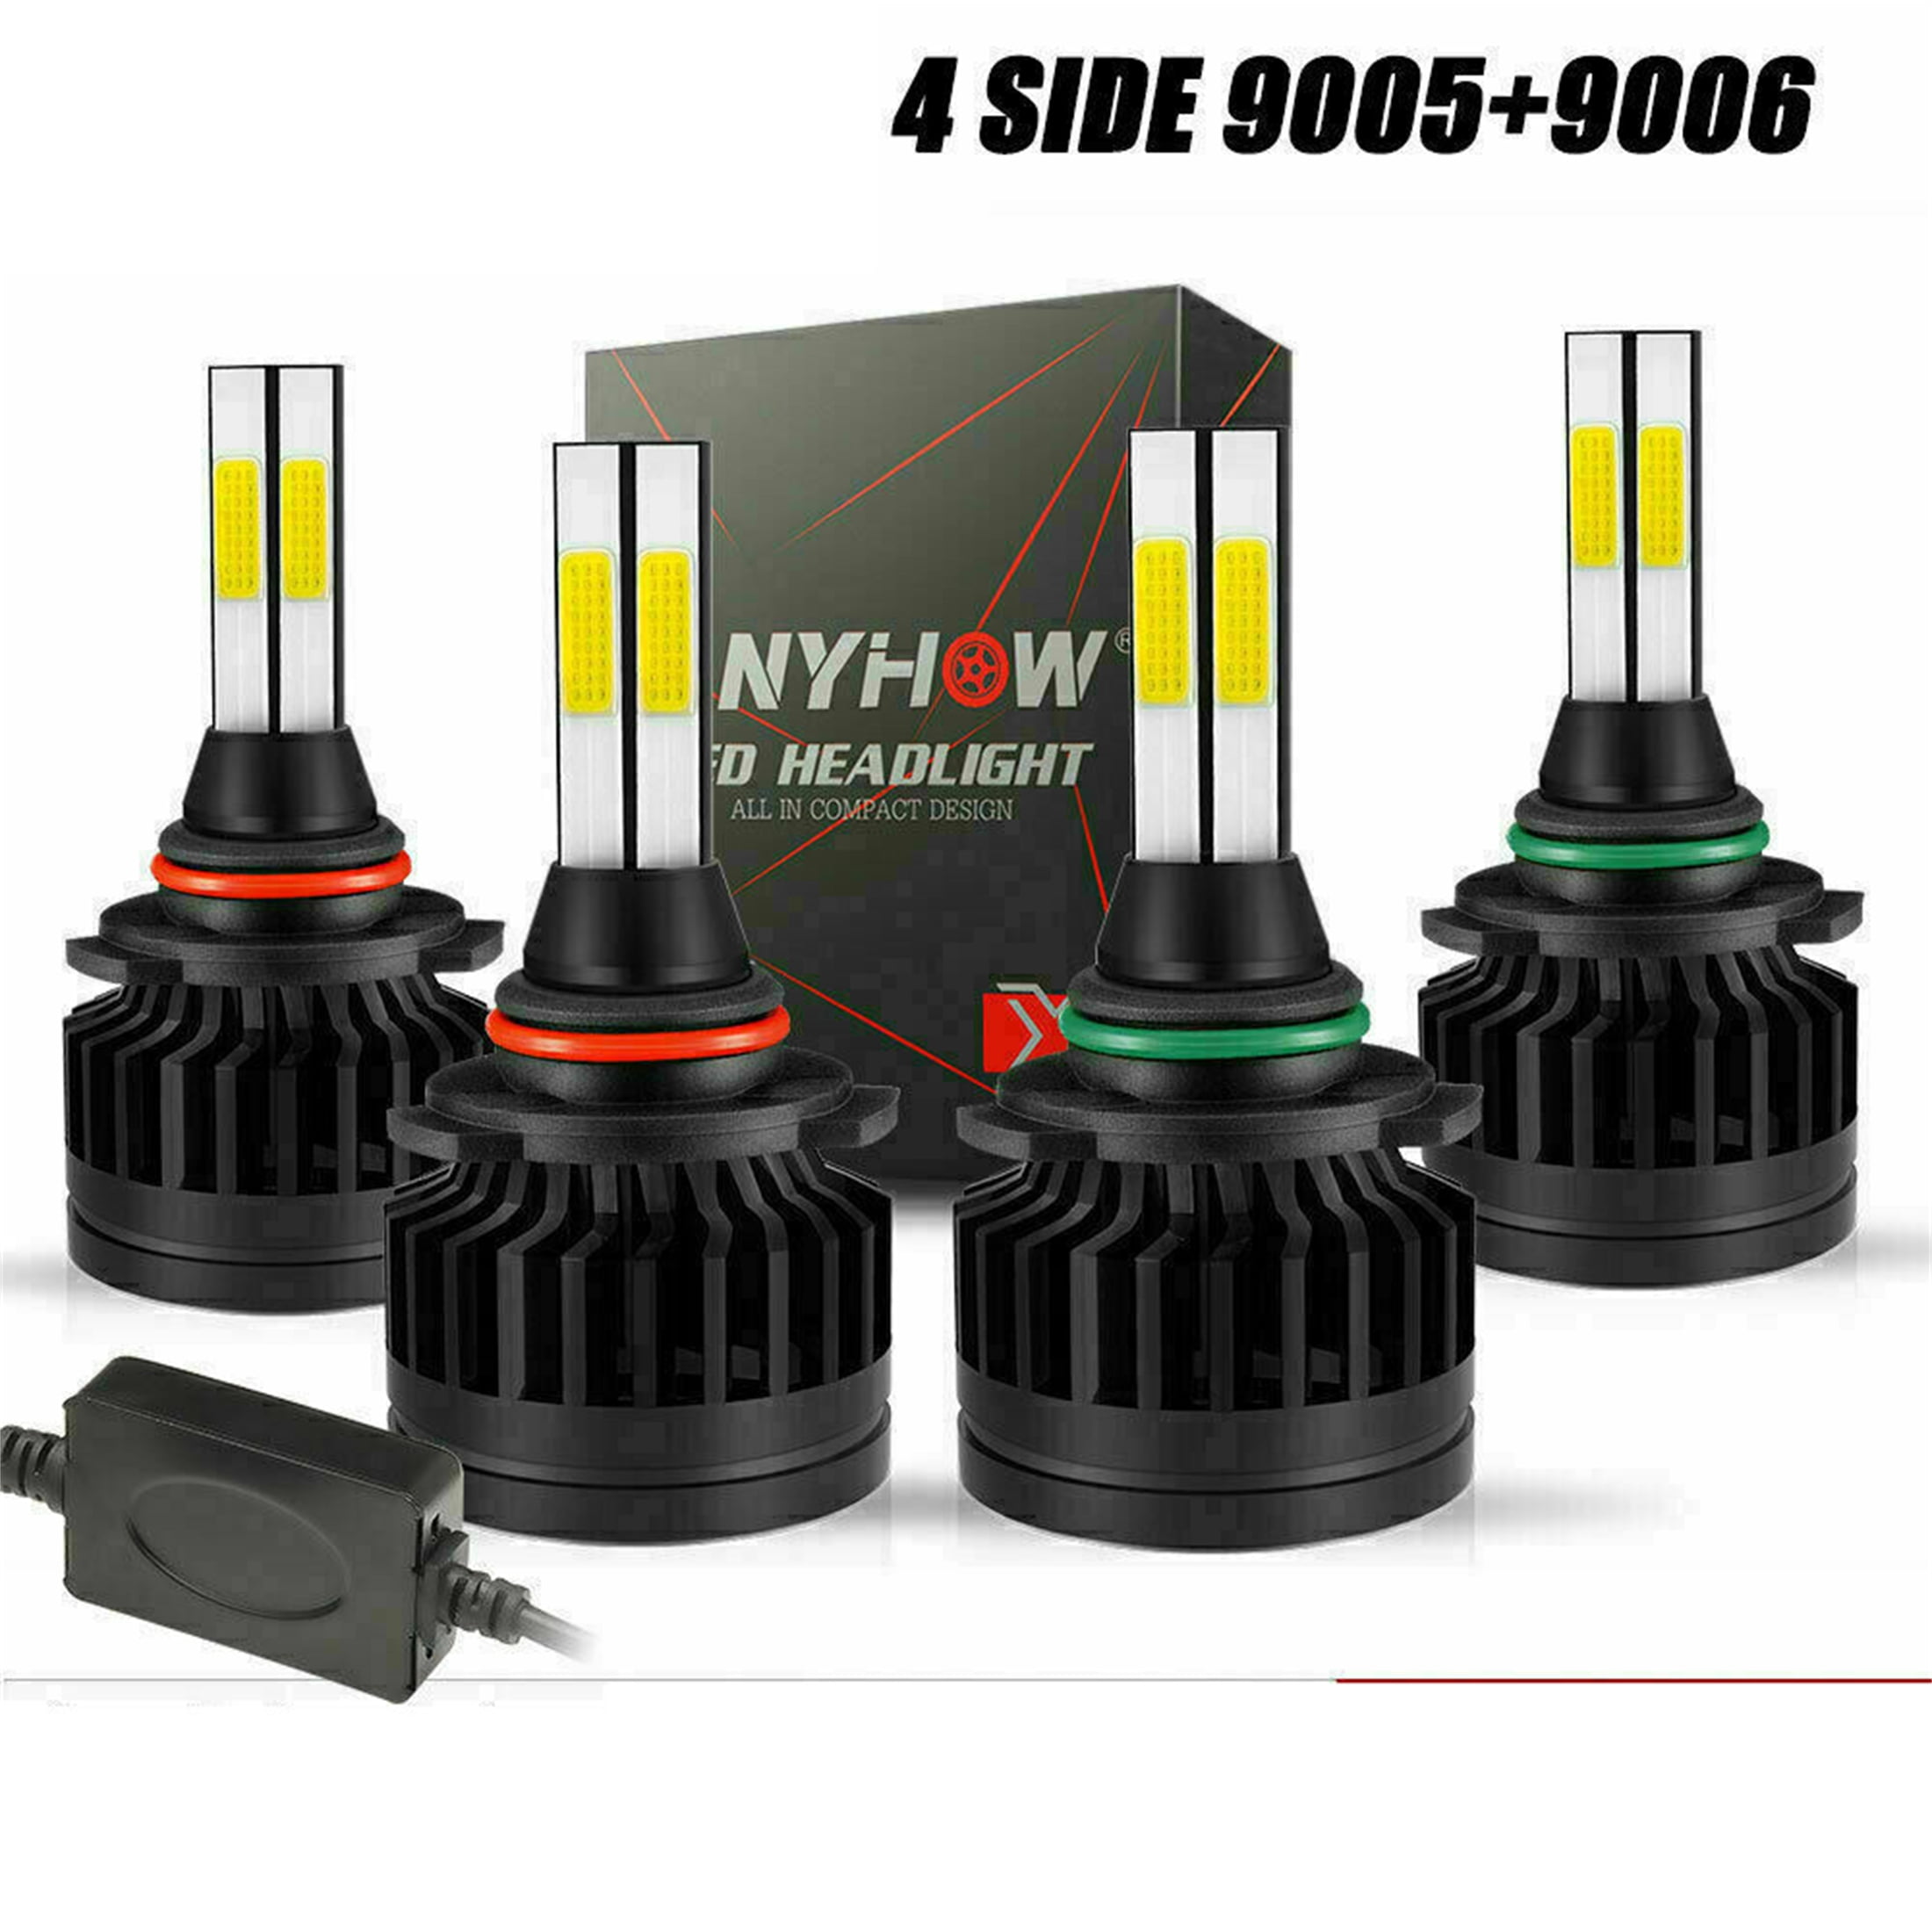 8-Side Combo 9005+9006 LED High Low Beam Headlight Kit Bulb 6000K WHITE